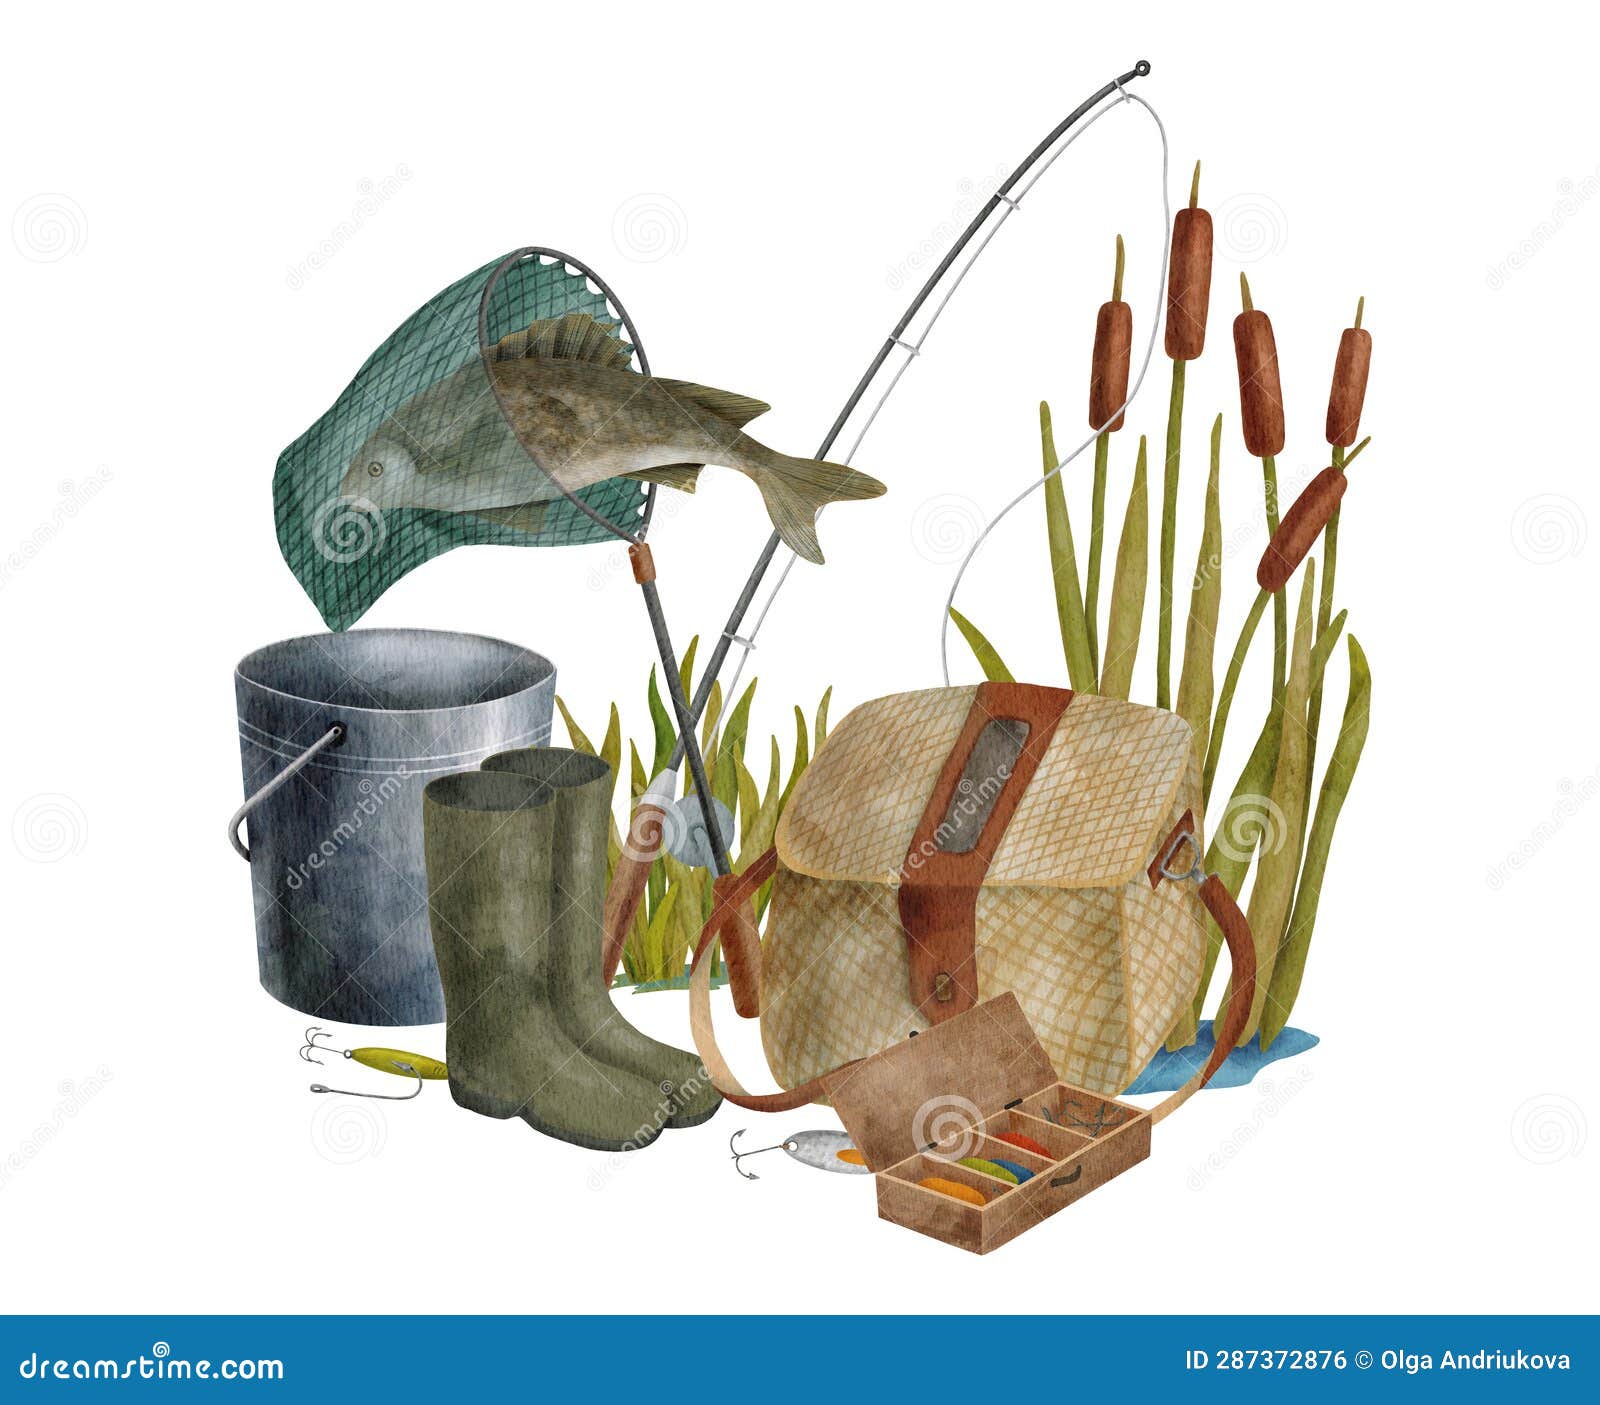 Fishing Creel Stock Illustrations – 30 Fishing Creel Stock Illustrations,  Vectors & Clipart - Dreamstime